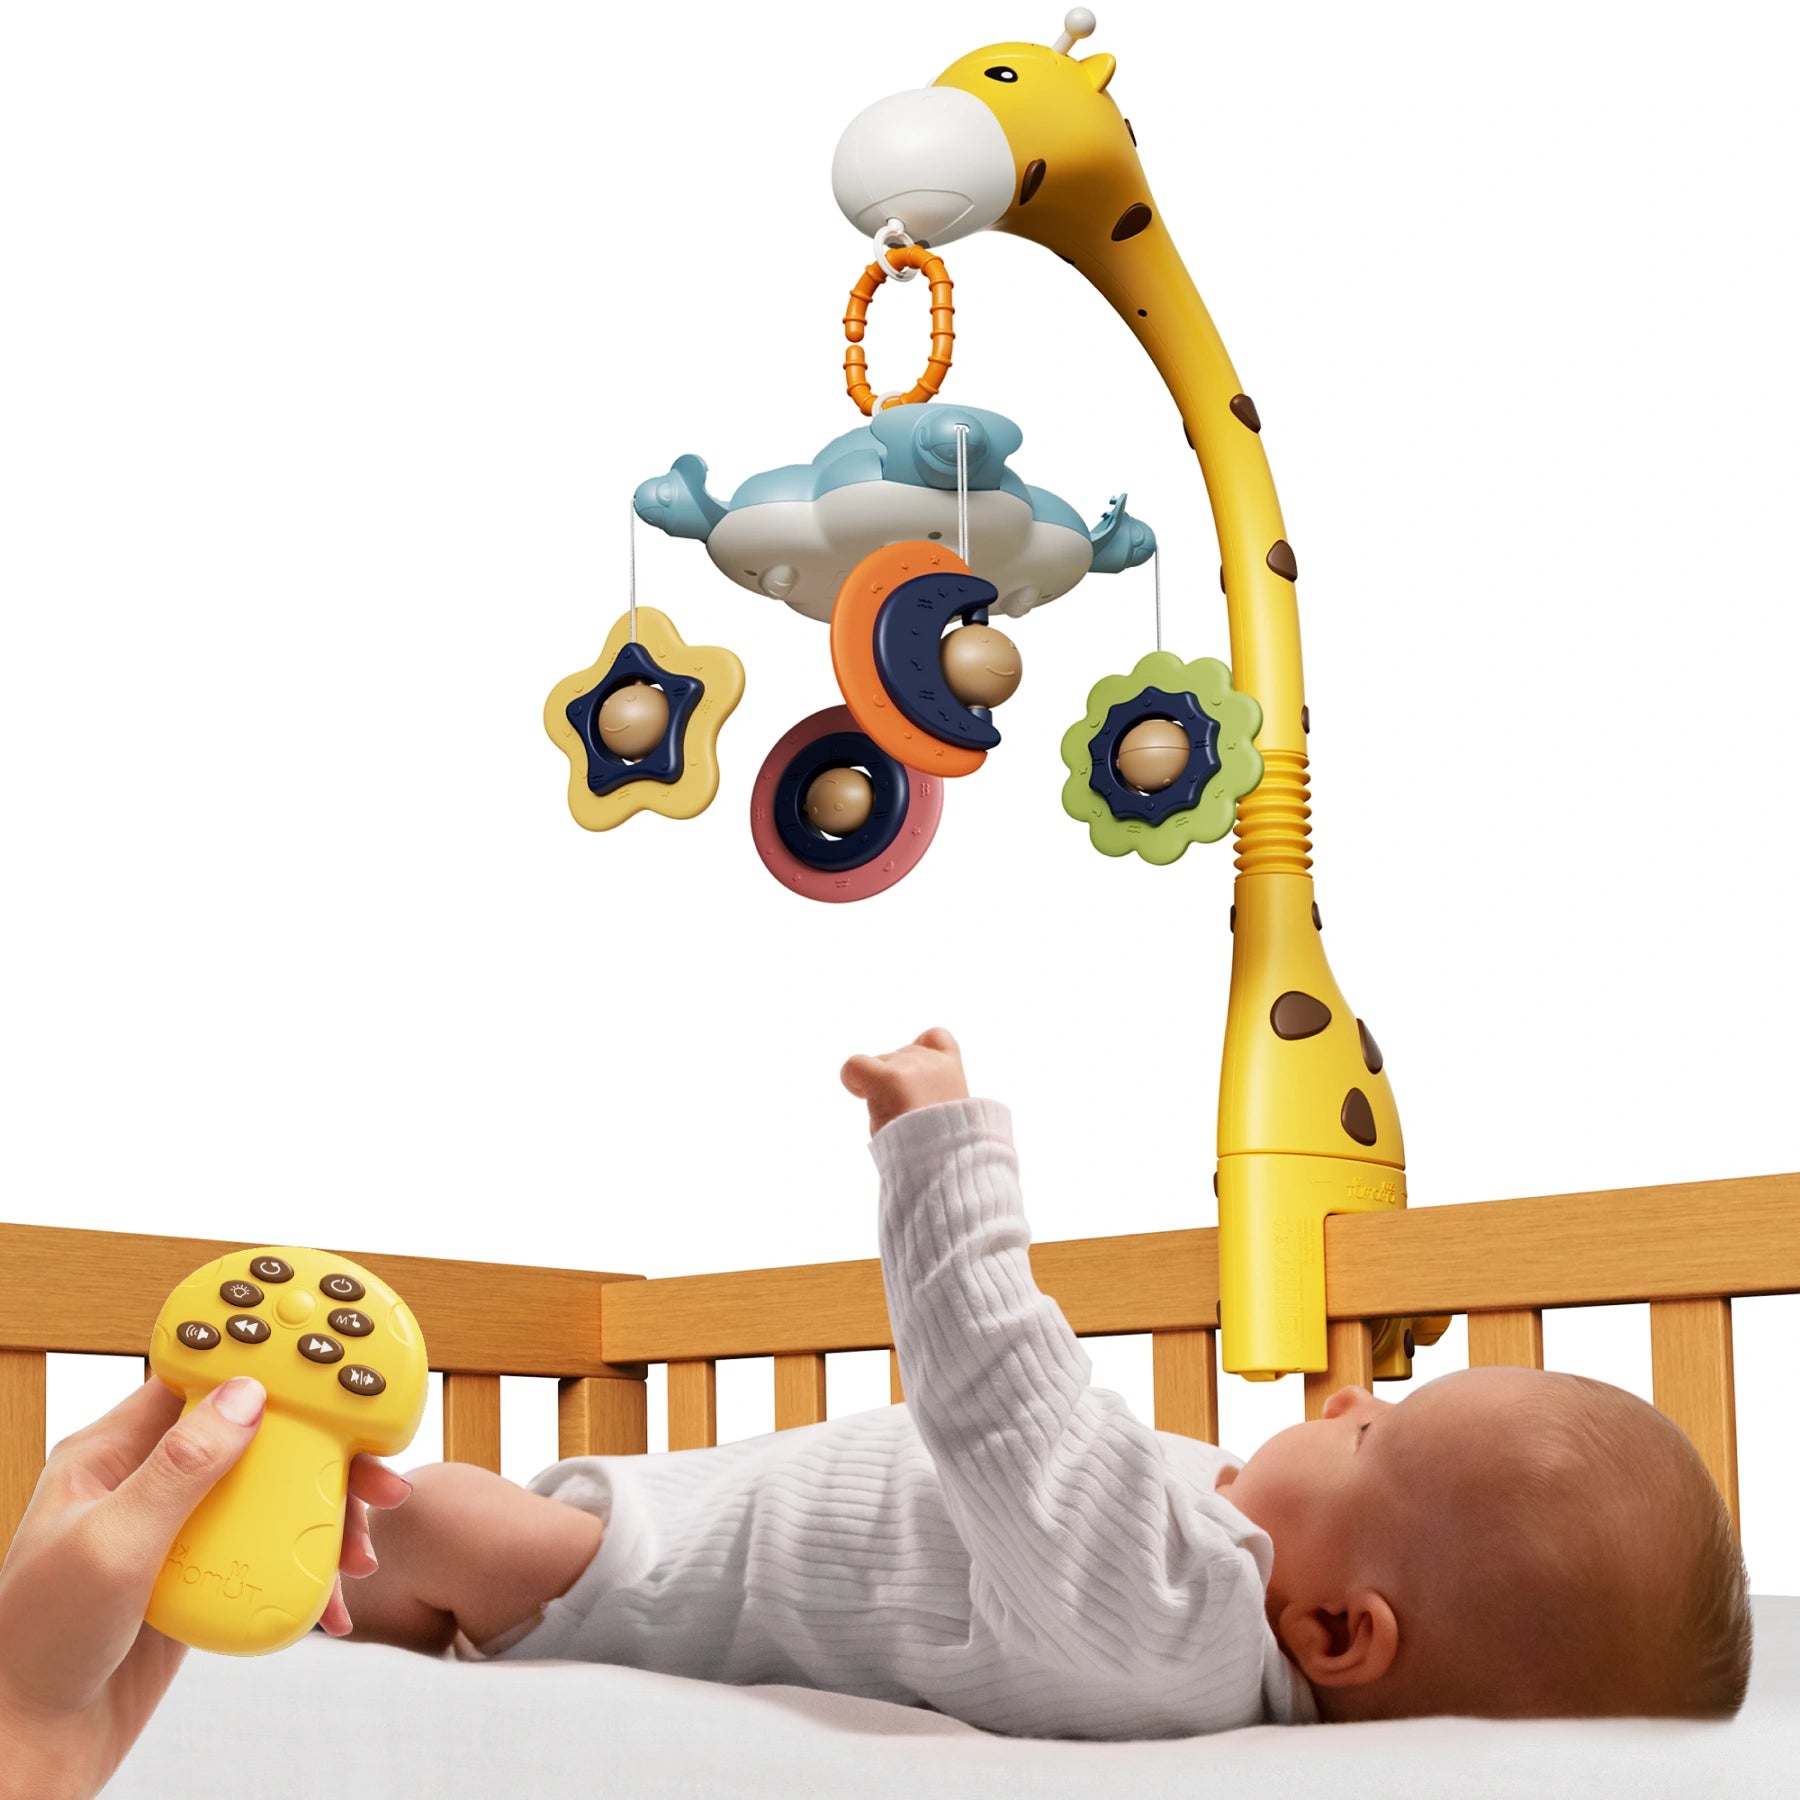 Móvil para cuna de bebé, juguetes para cuna con control remoto, proyección de luz nocturna, música, ruido blanco, juguetes de jirafa para recién nacidos a partir de 0 meses